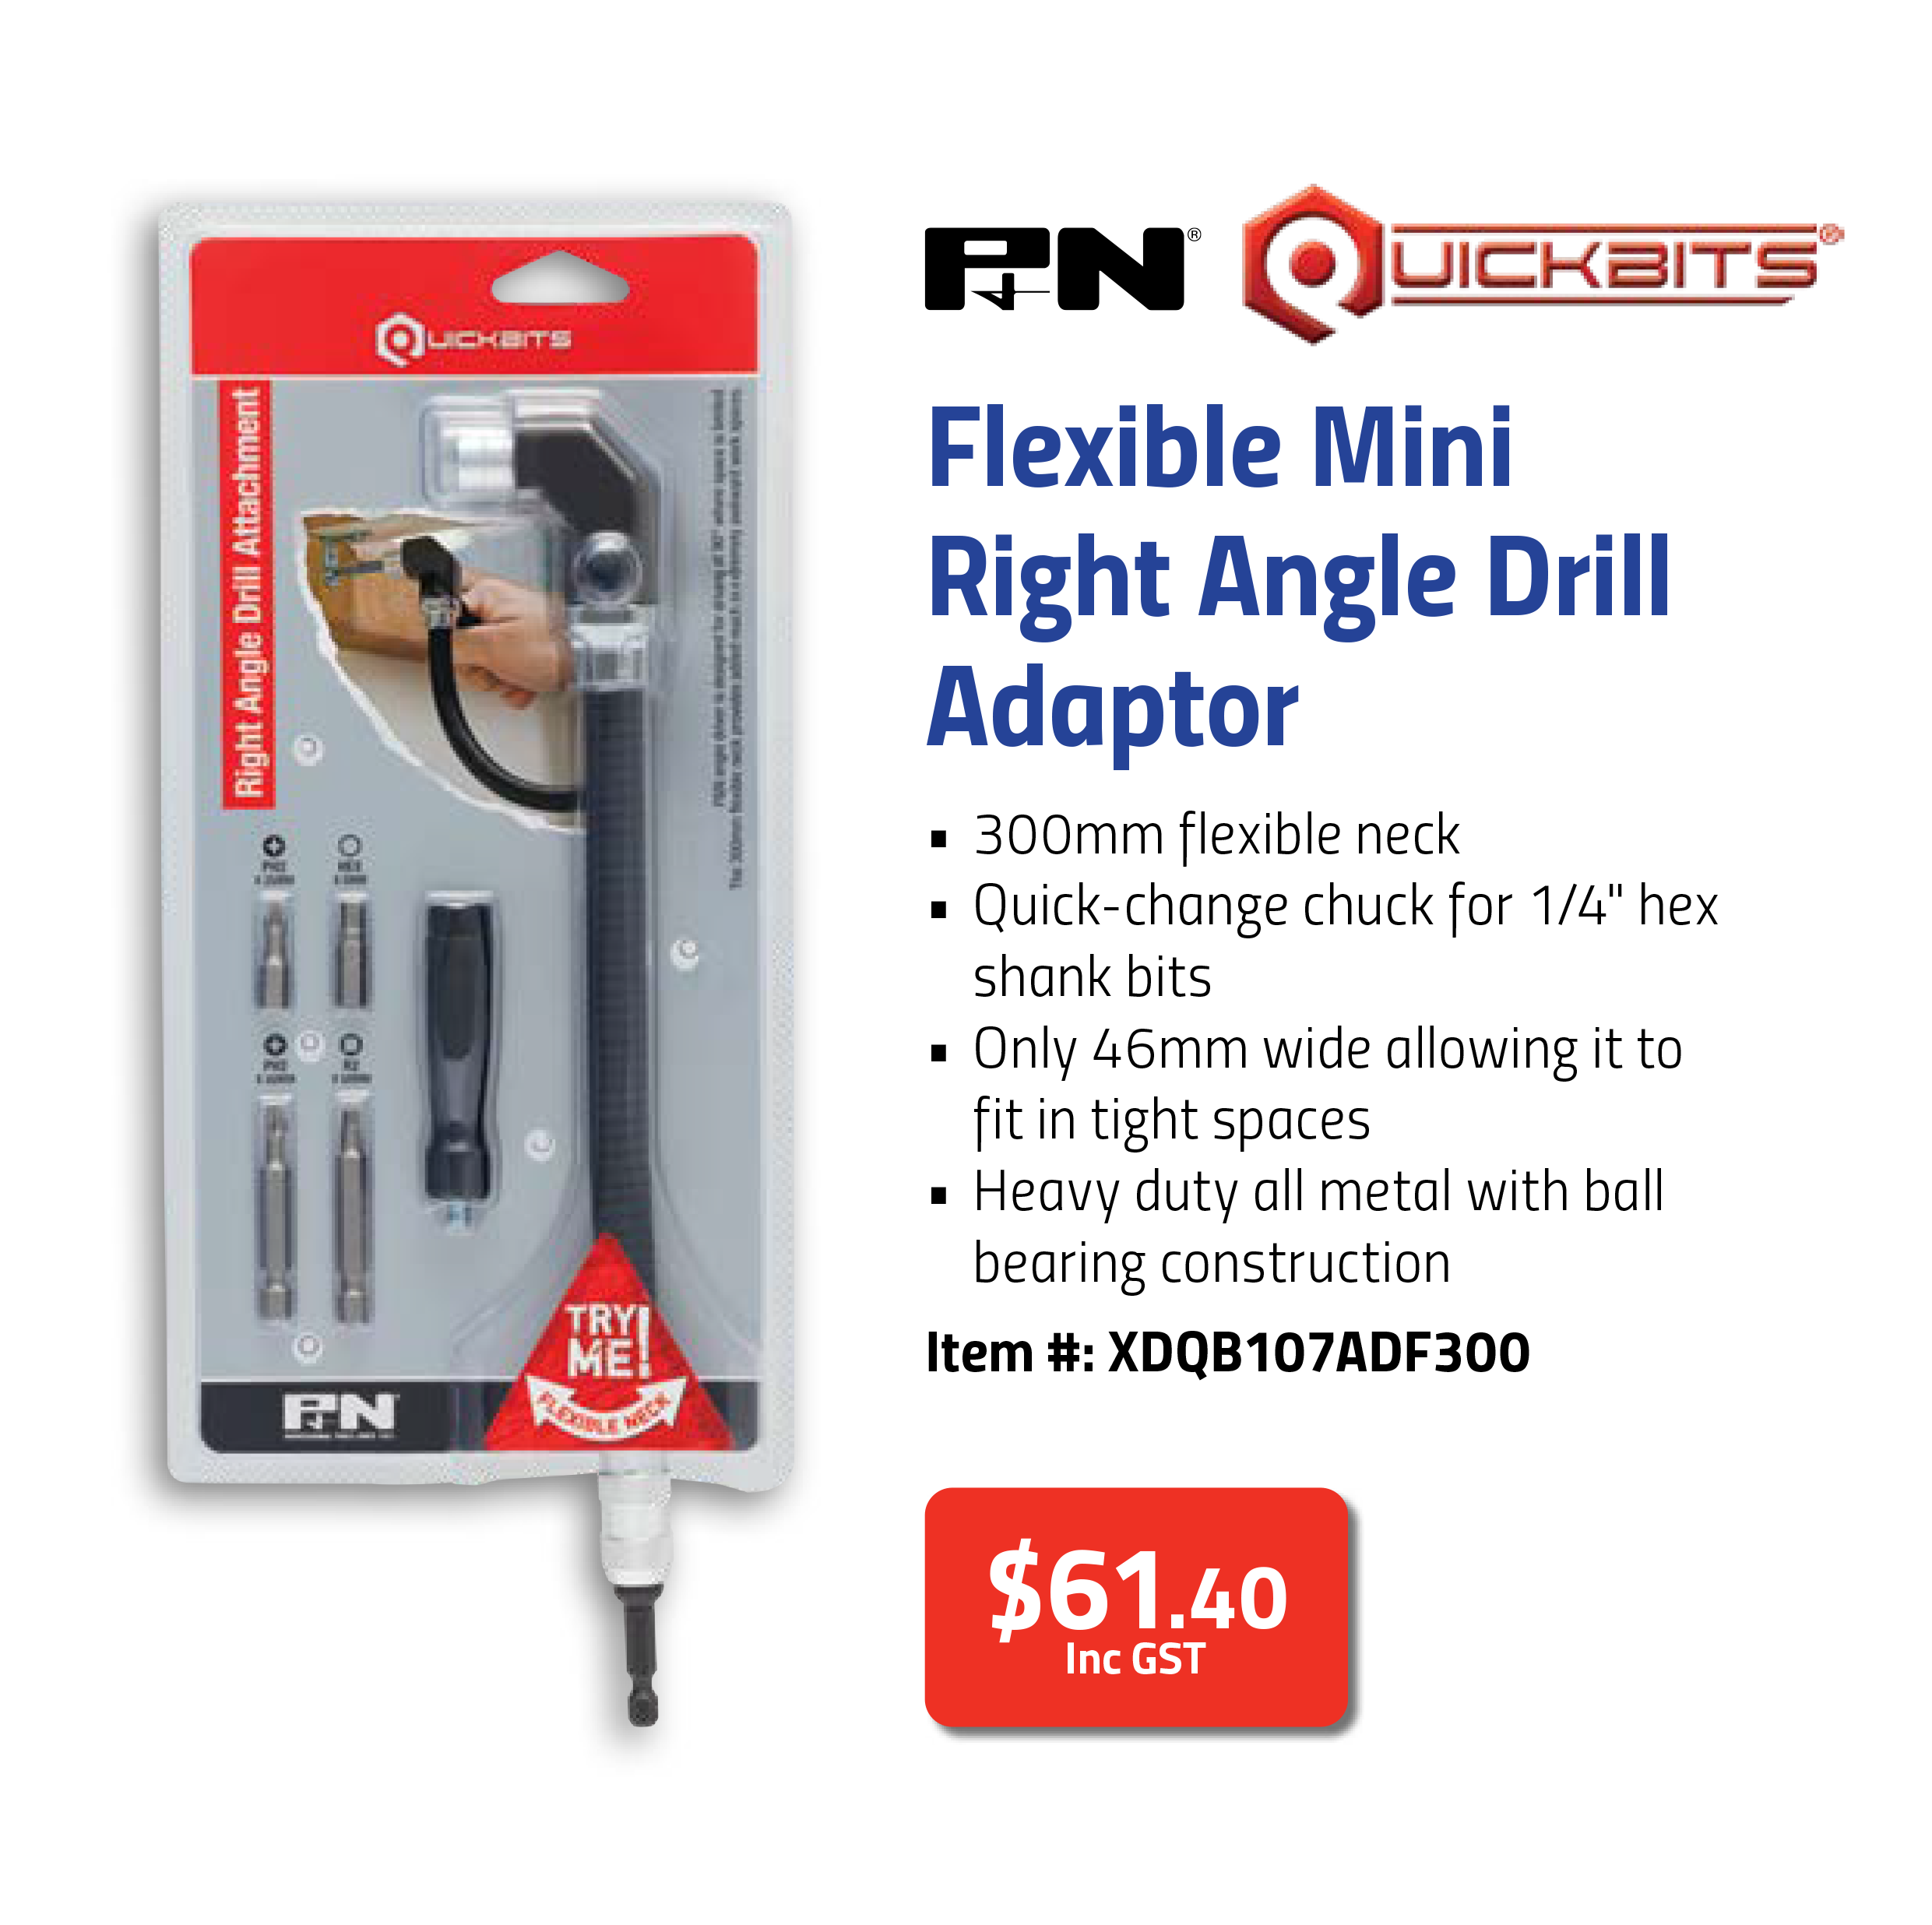 Right Angle Mini Flexible Drill Attachment